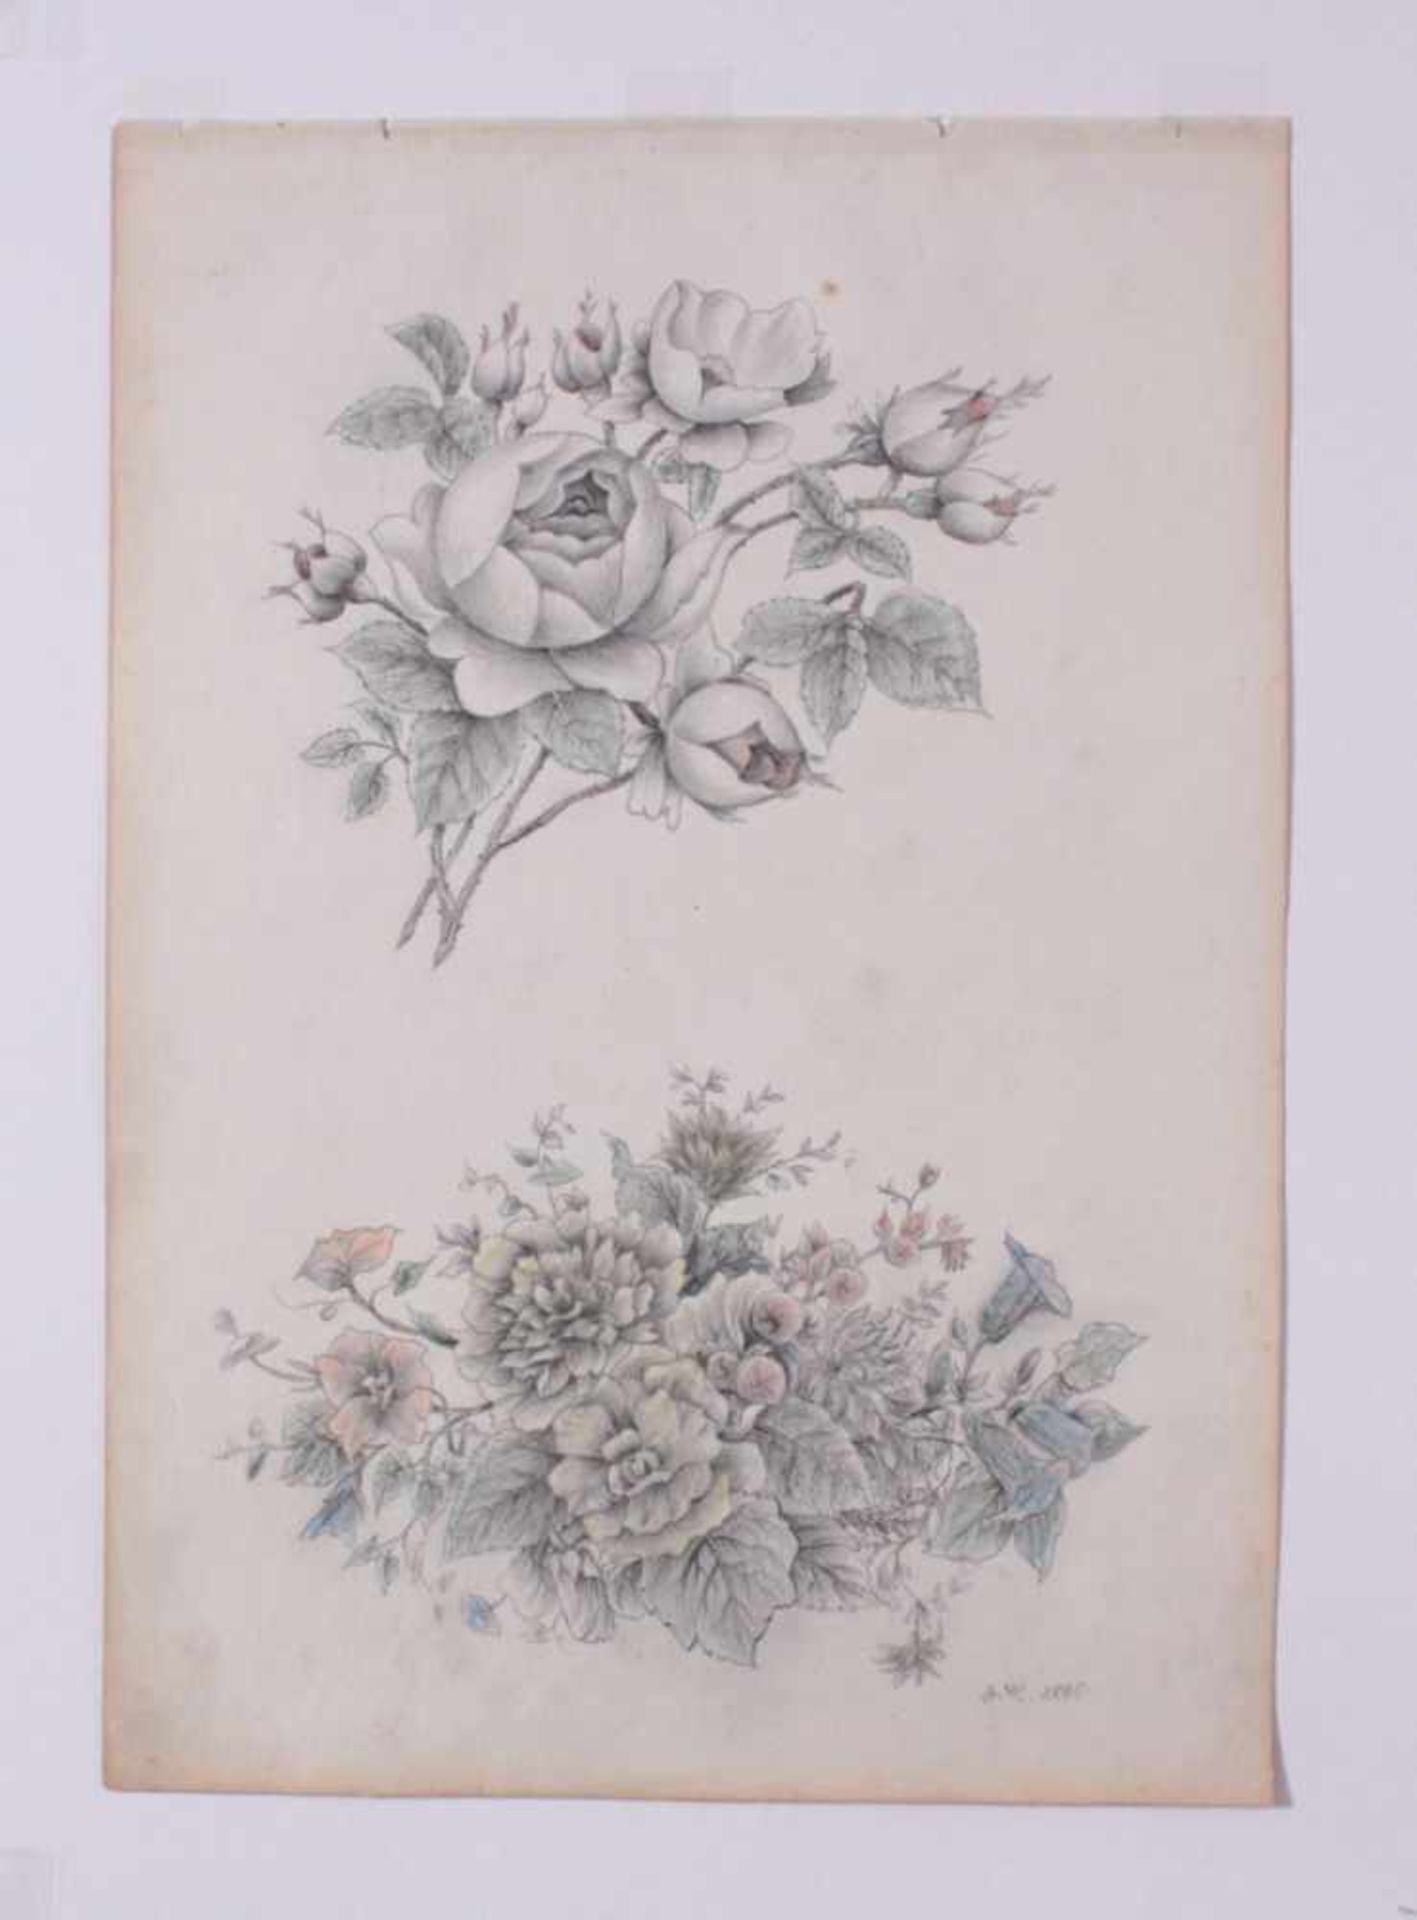 Alois Hämmerle (1862 - Augsburg - 1914)2 Bleistiftzeichnung 1885. "Rosenzweig und Blumengebinde"," - Bild 2 aus 3